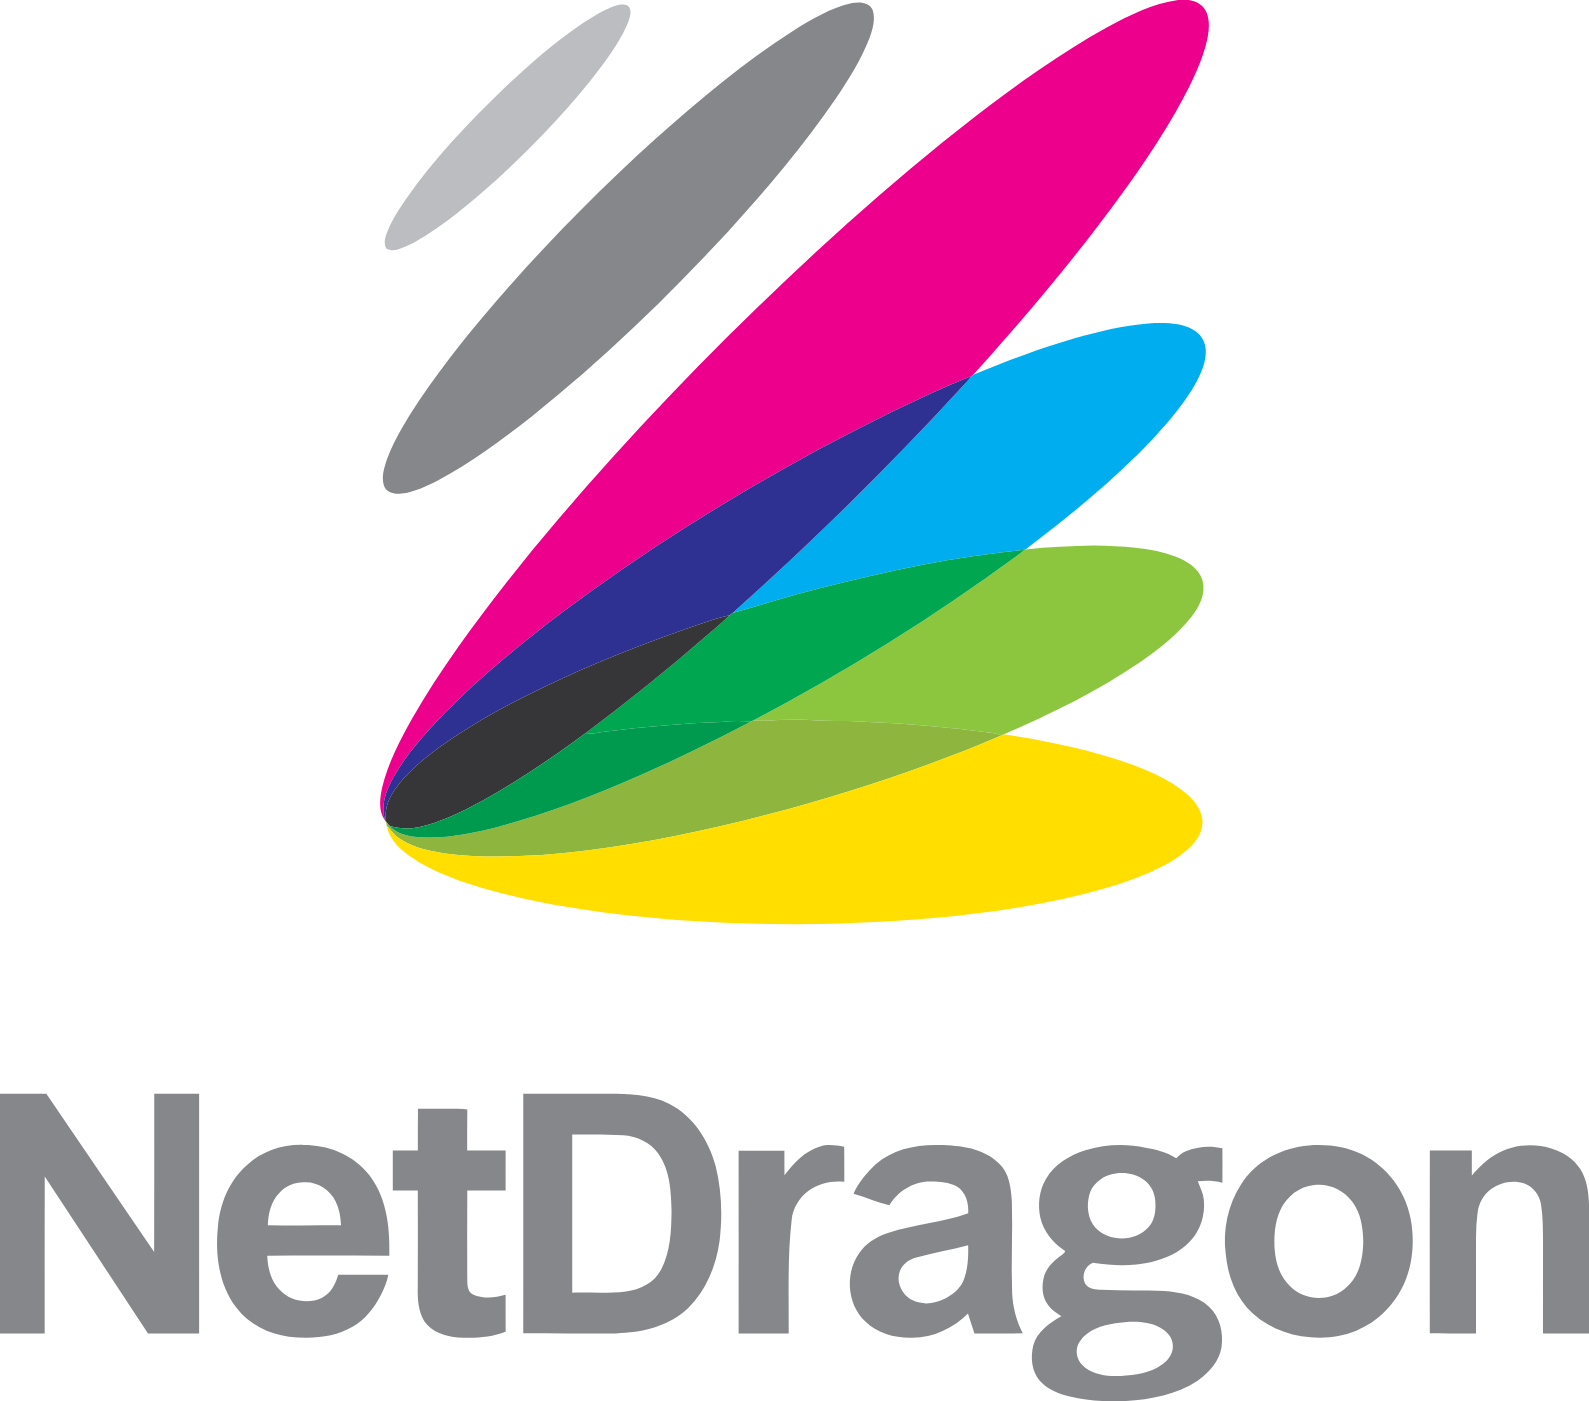 NetDragon Websoft logo large (transparent PNG)